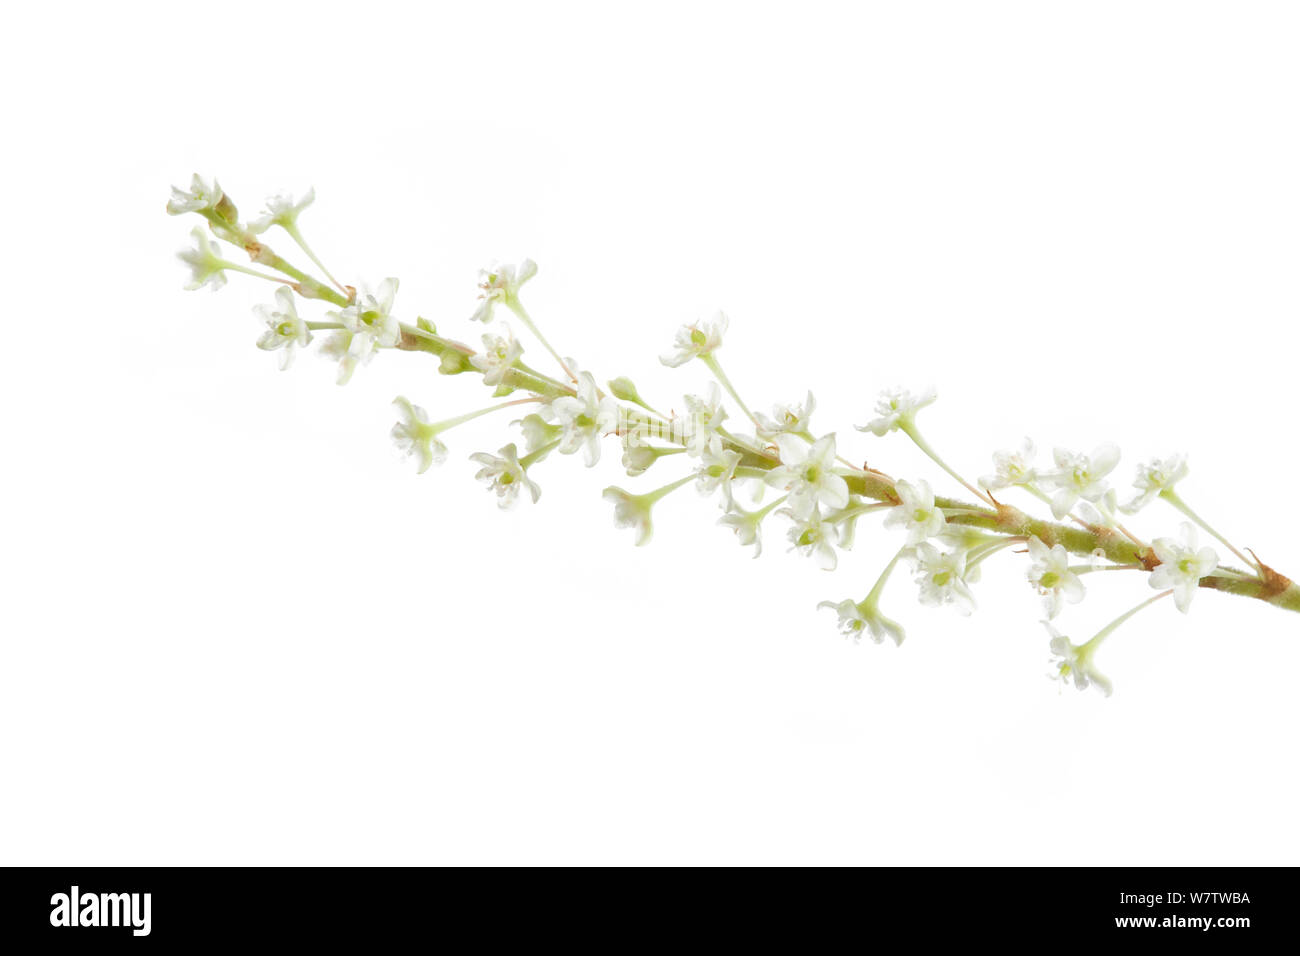 La renouée japonaise (Fallopia japonica) fleurs, contre fond blanc, parc national de Peak District, Derbyshire, Angleterre, Royaume-Uni, septembre. Les espèces envahissantes. Banque D'Images